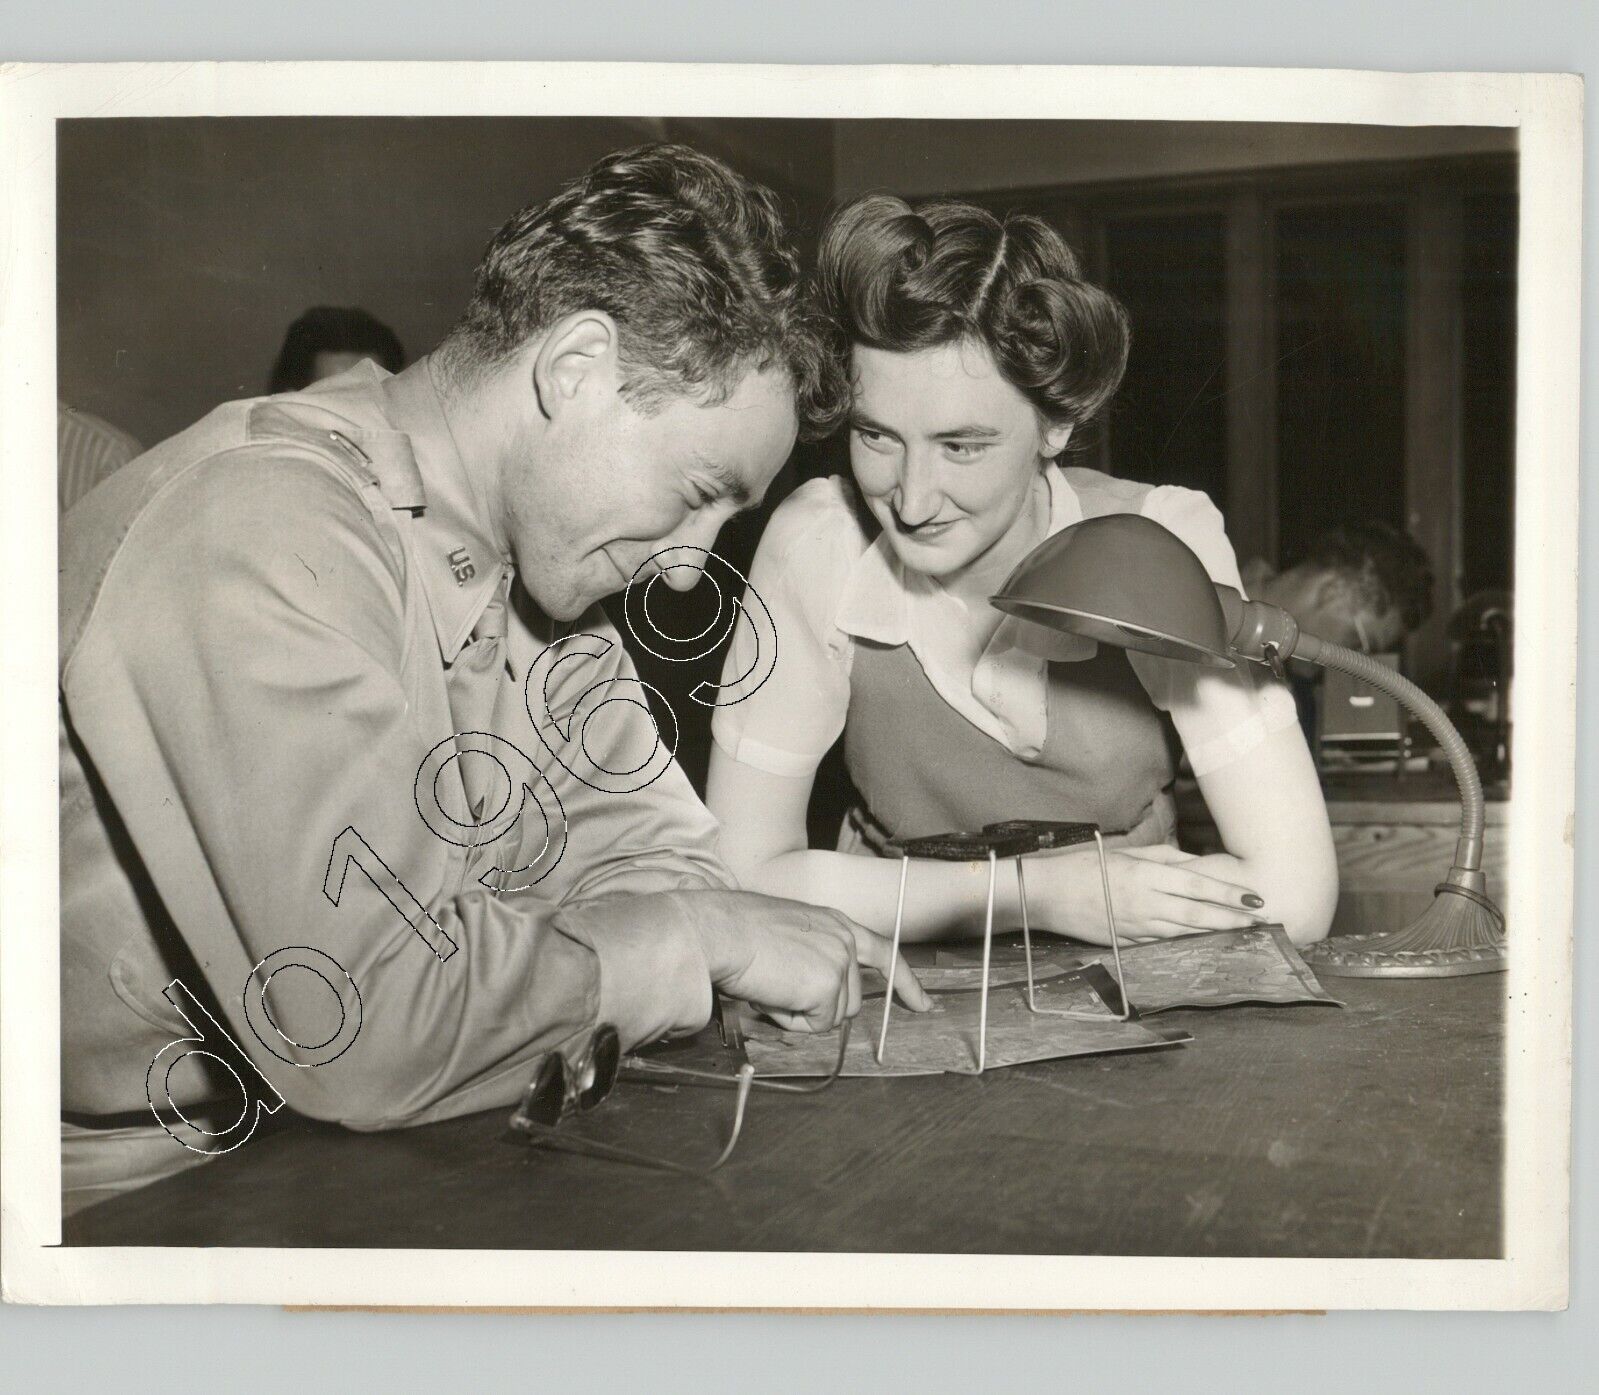 Lt. HOWARD SCHNUR & MARIAN STOCK Flirt @ PRINCETON U, NJ WWII 1942 Press Photo